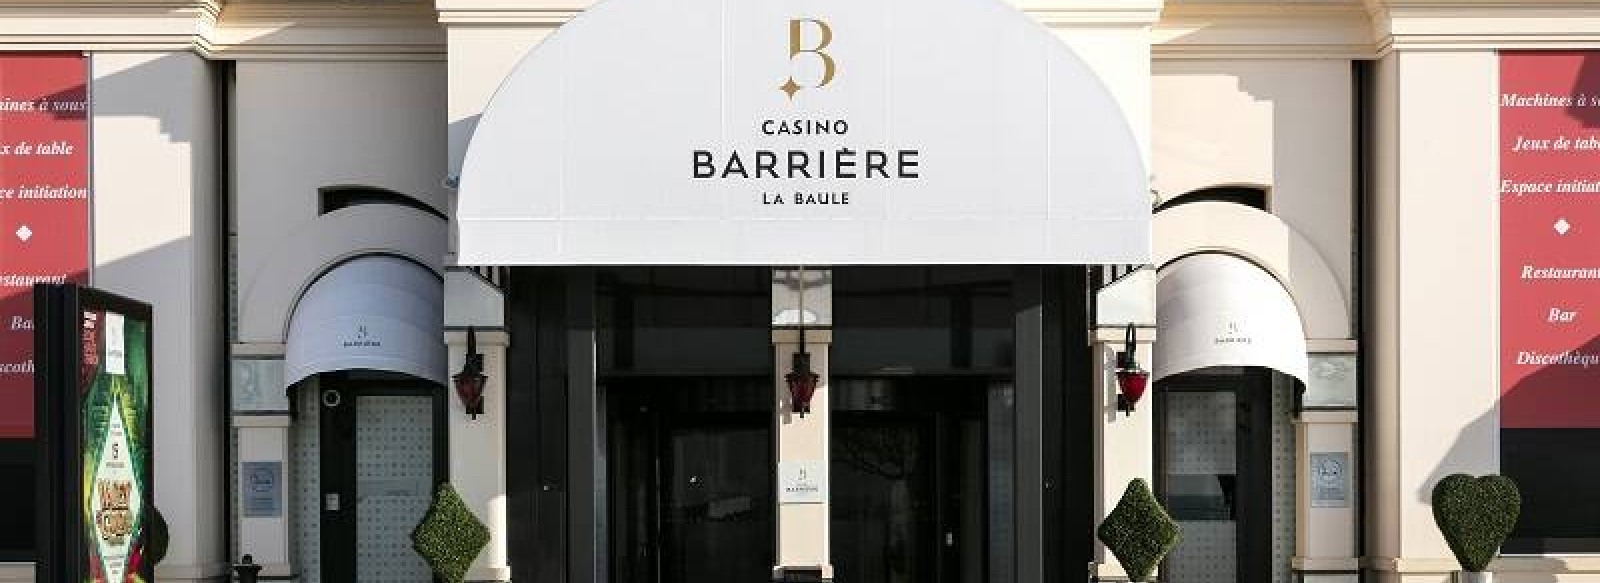 Casino Barriere La Baule